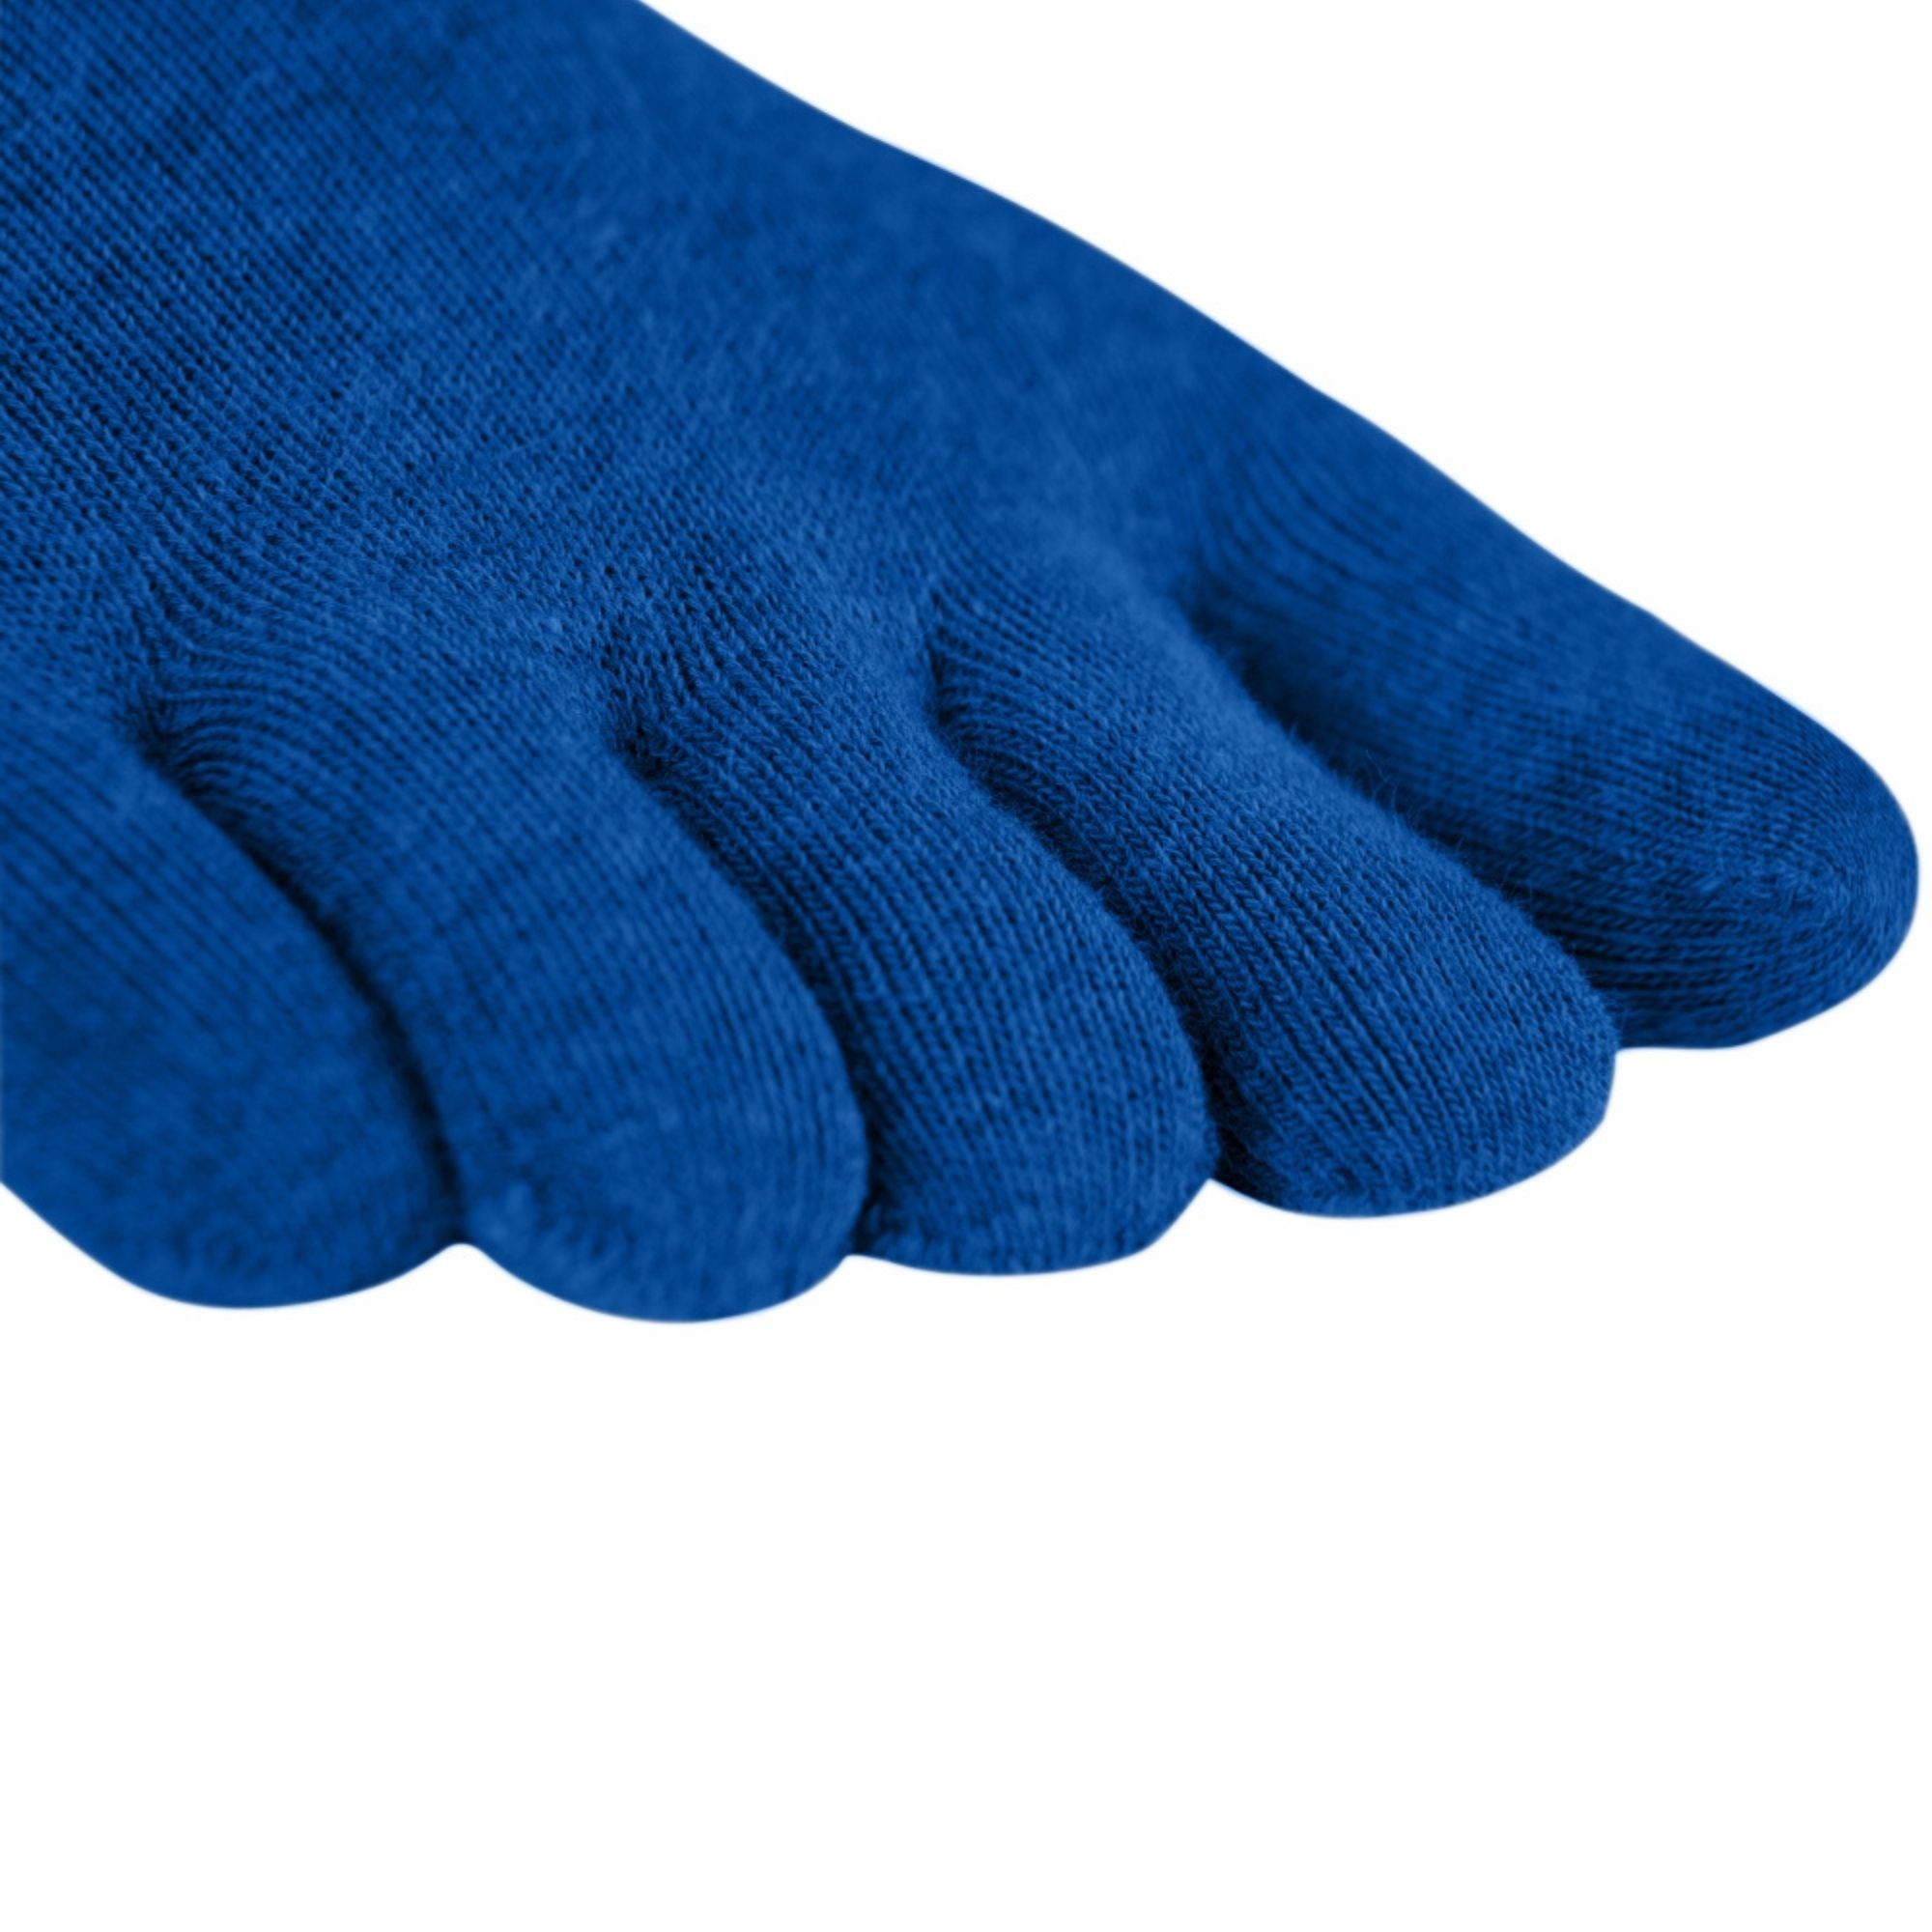 3er Sparpack Sport-chaussettes à orteils en Coolmax et coton de Knitido en mandarin blue